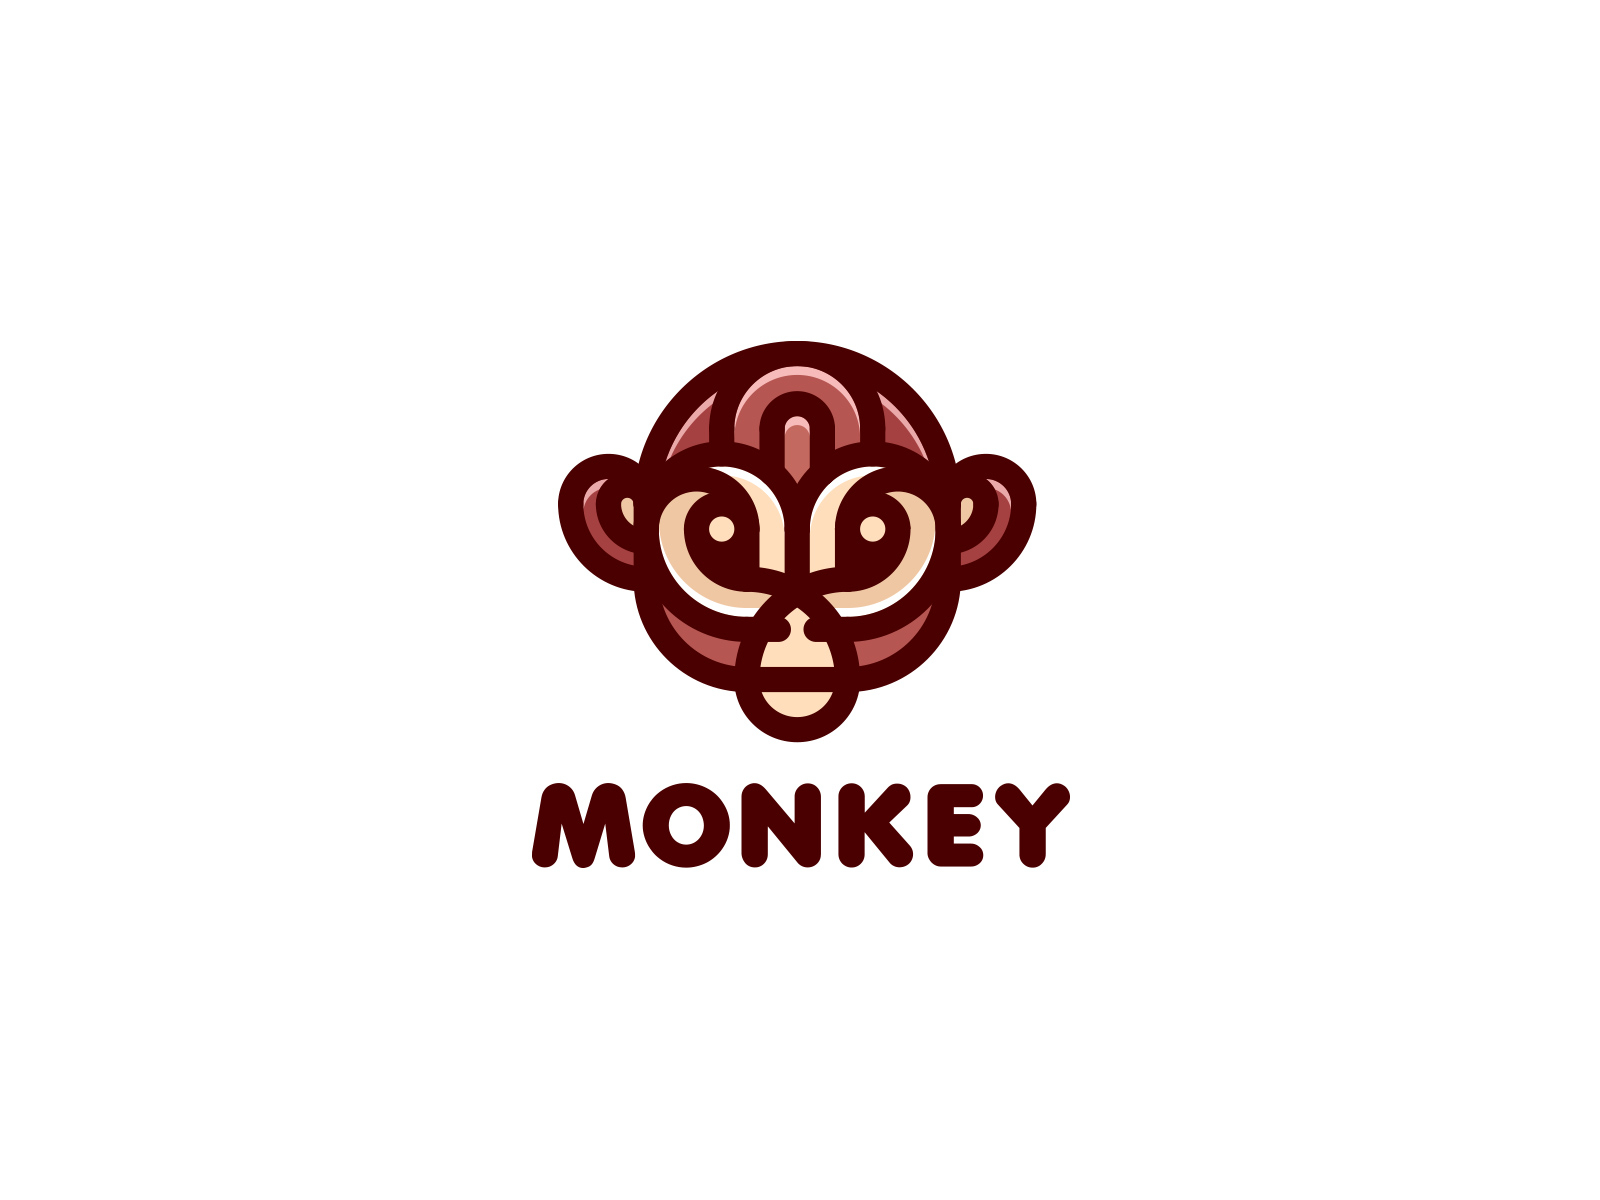 Monkey Logo | Typographic logo design, Monkey logo, Typographic logo